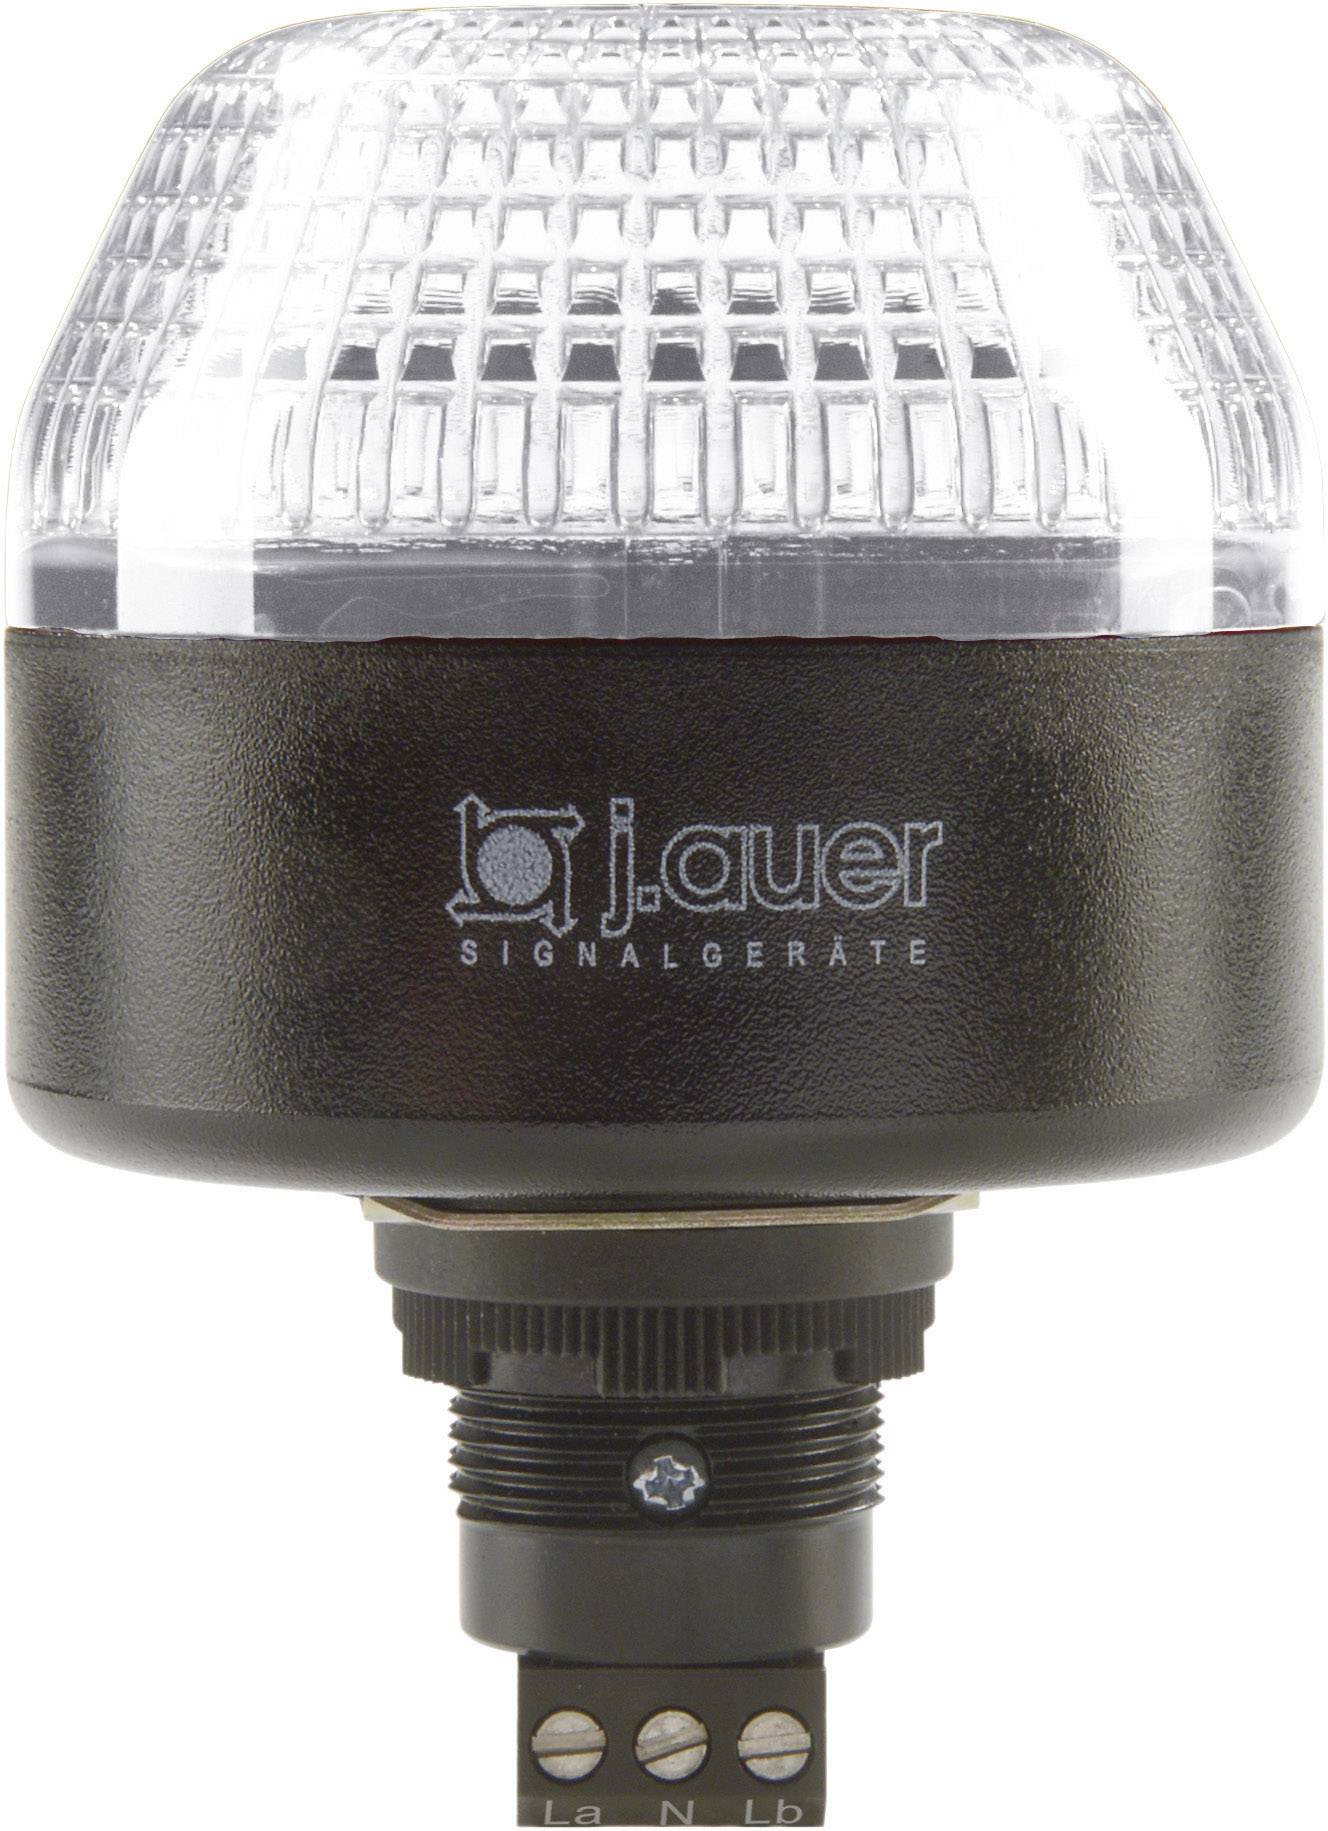 AUER SIGNAL Signalleuchte LED Auer Signalgeräte IBL Klar Dauerlicht, Blinklicht 230 V/AC